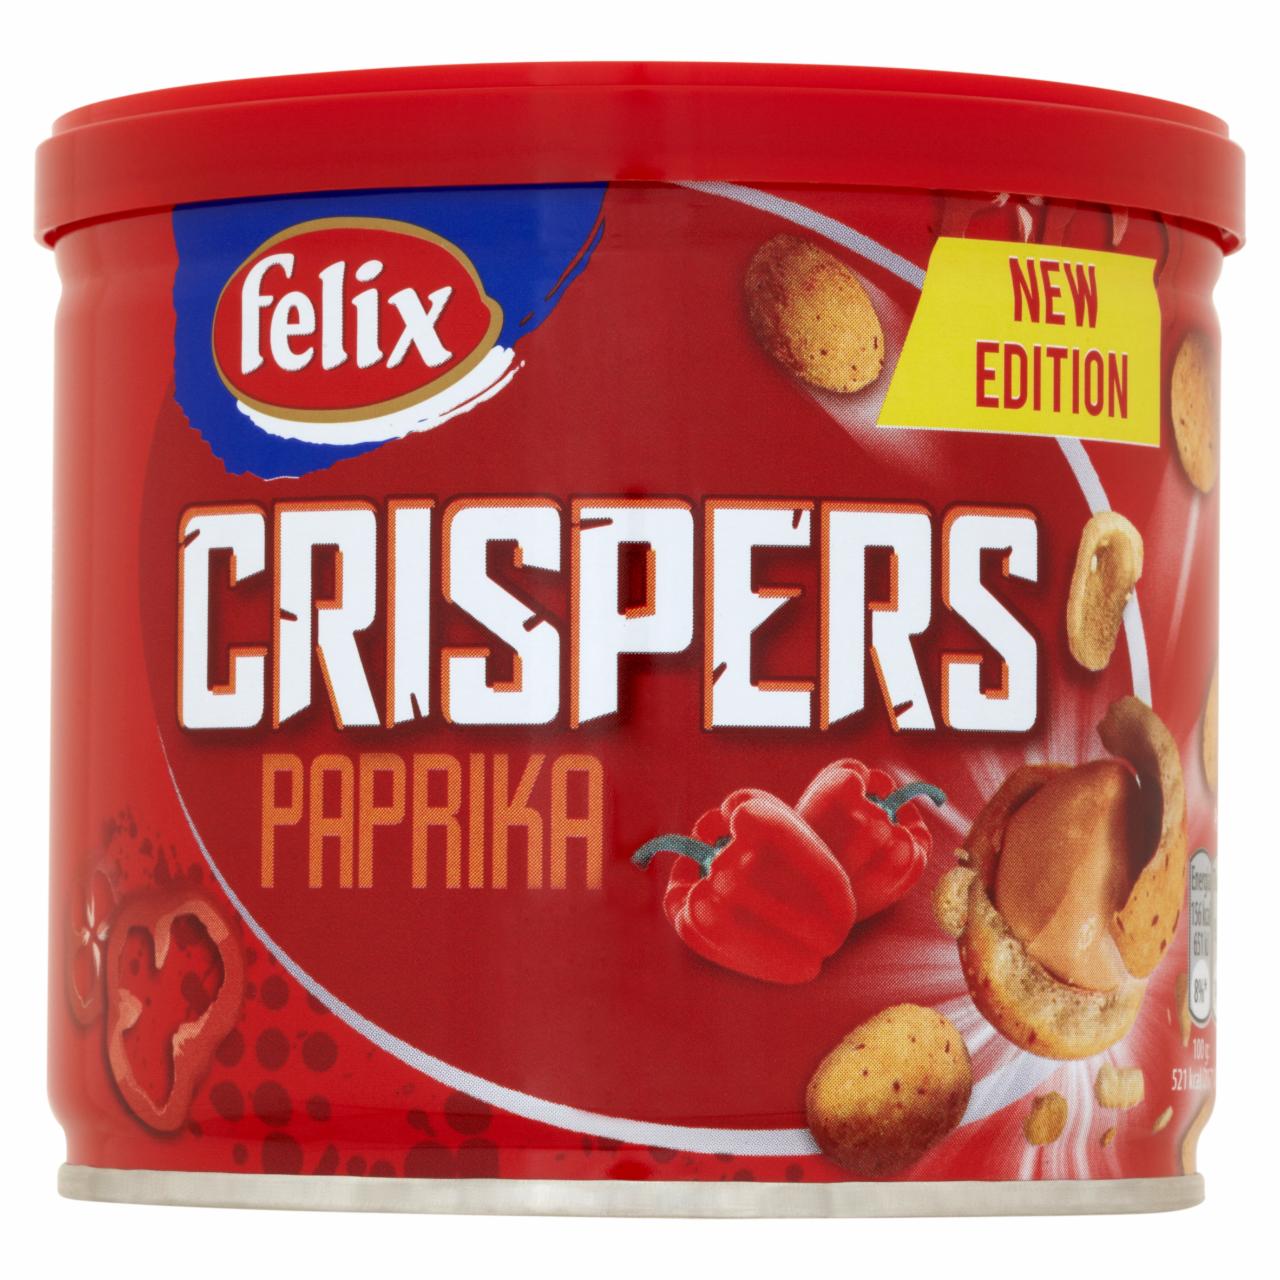 Zdjęcia - Felix Crispers Orzeszki ziemne smażone w chrupkiej skorupce o smaku paprykowym 110 g